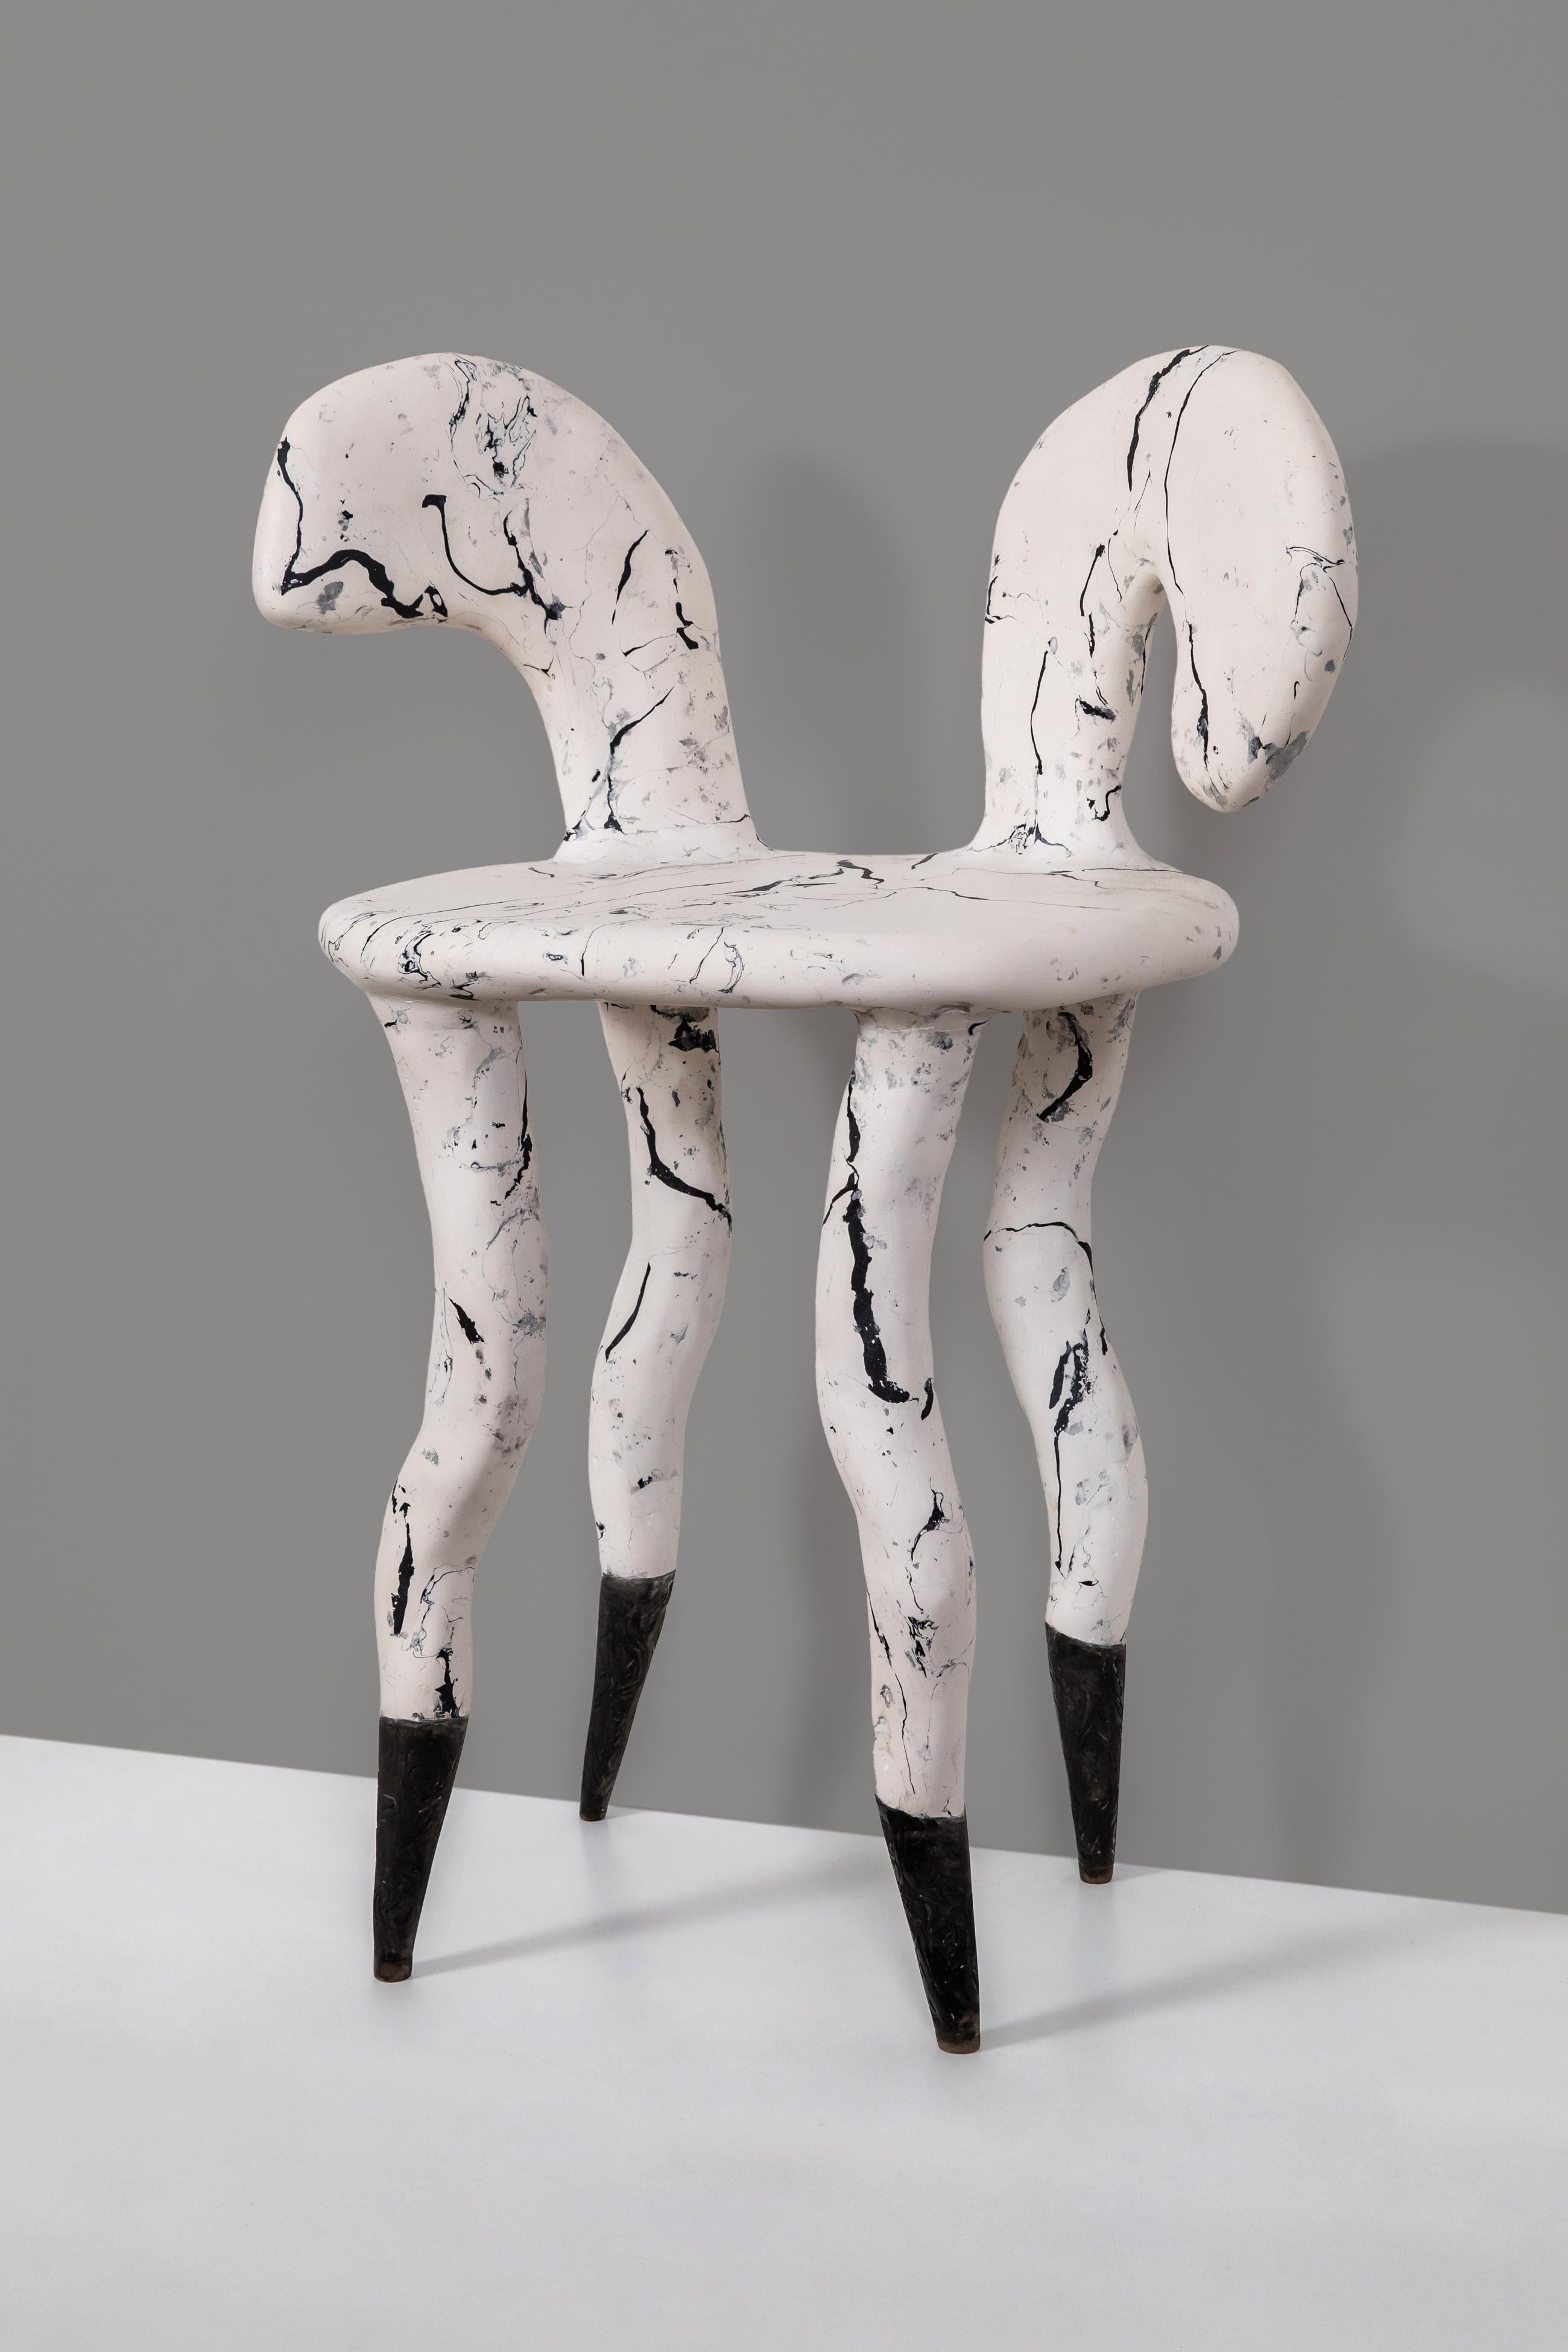 sculpture chair